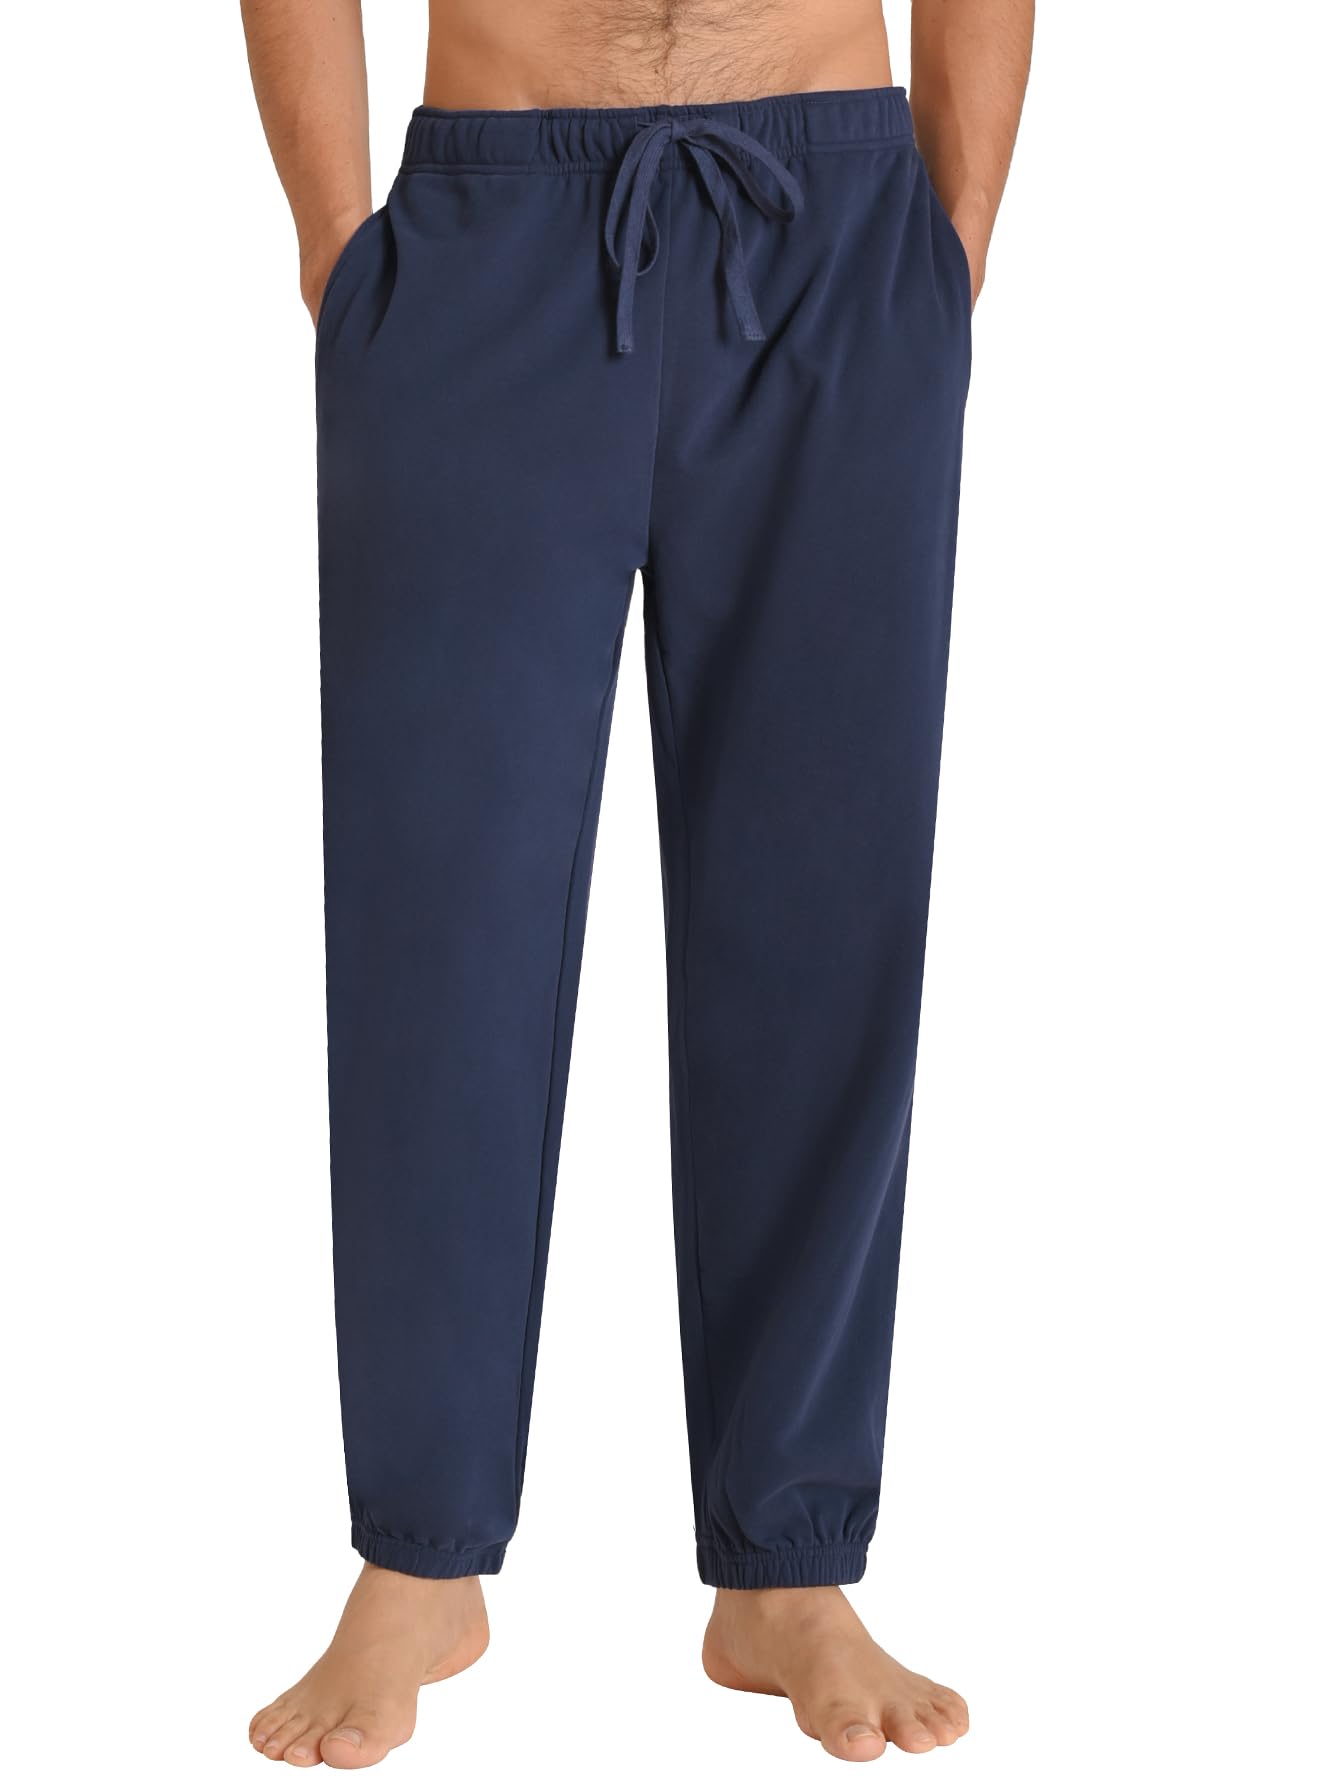 Men's Cotton Lounge Pants Jogger Sweatpants with Pockets - Latuza